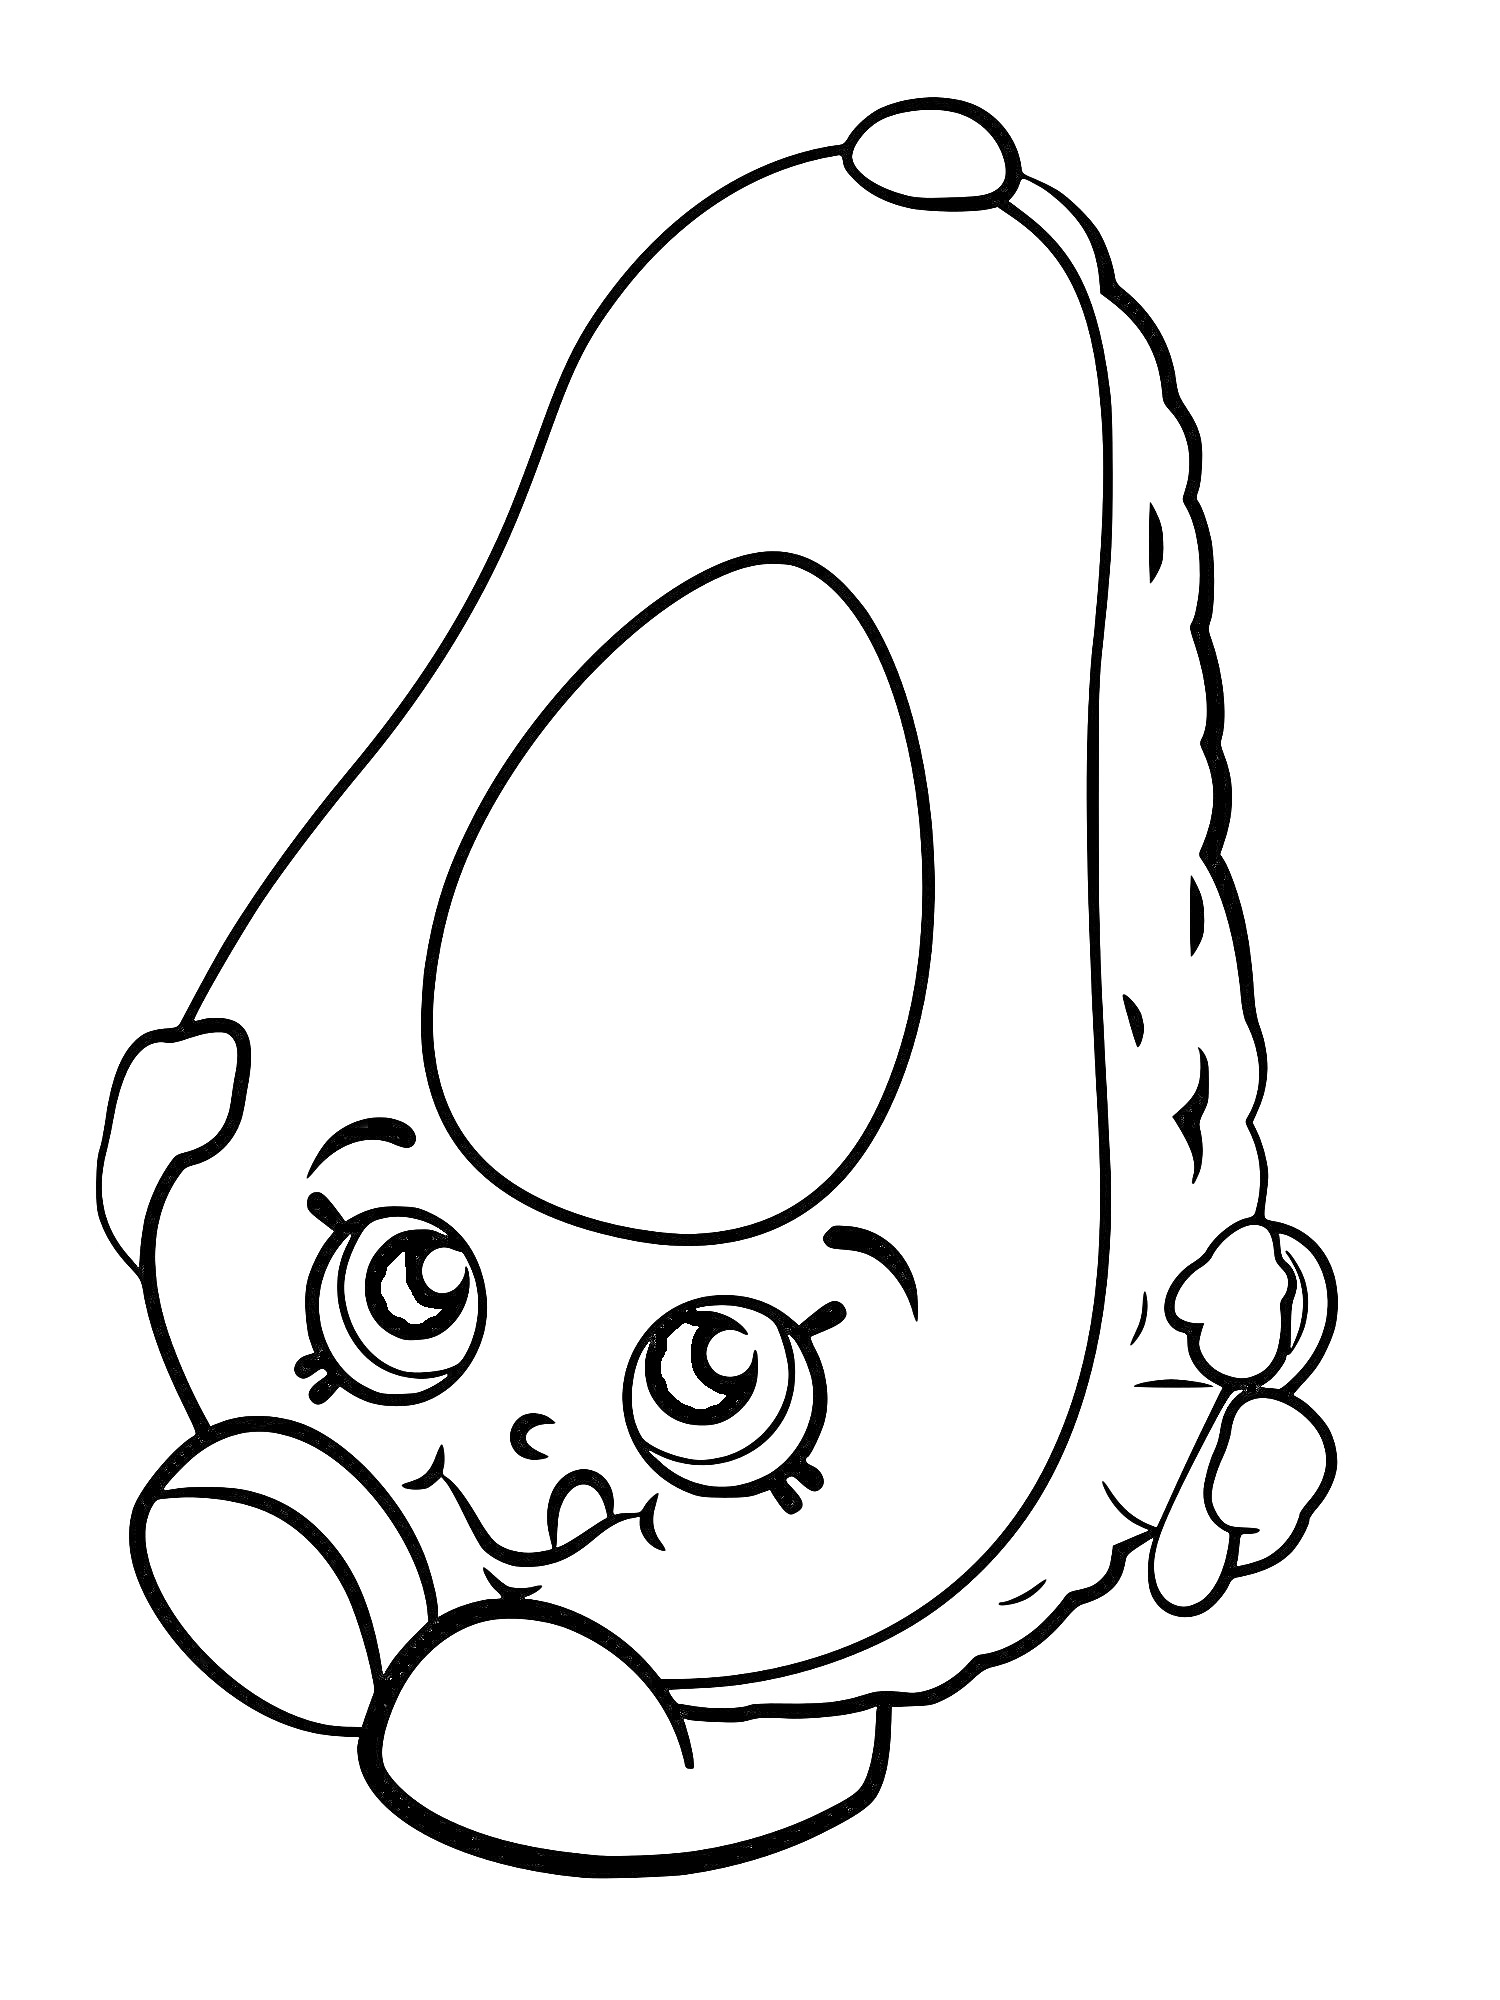 Раскраска Авокадо Шопкинс с большими глазами и ручками